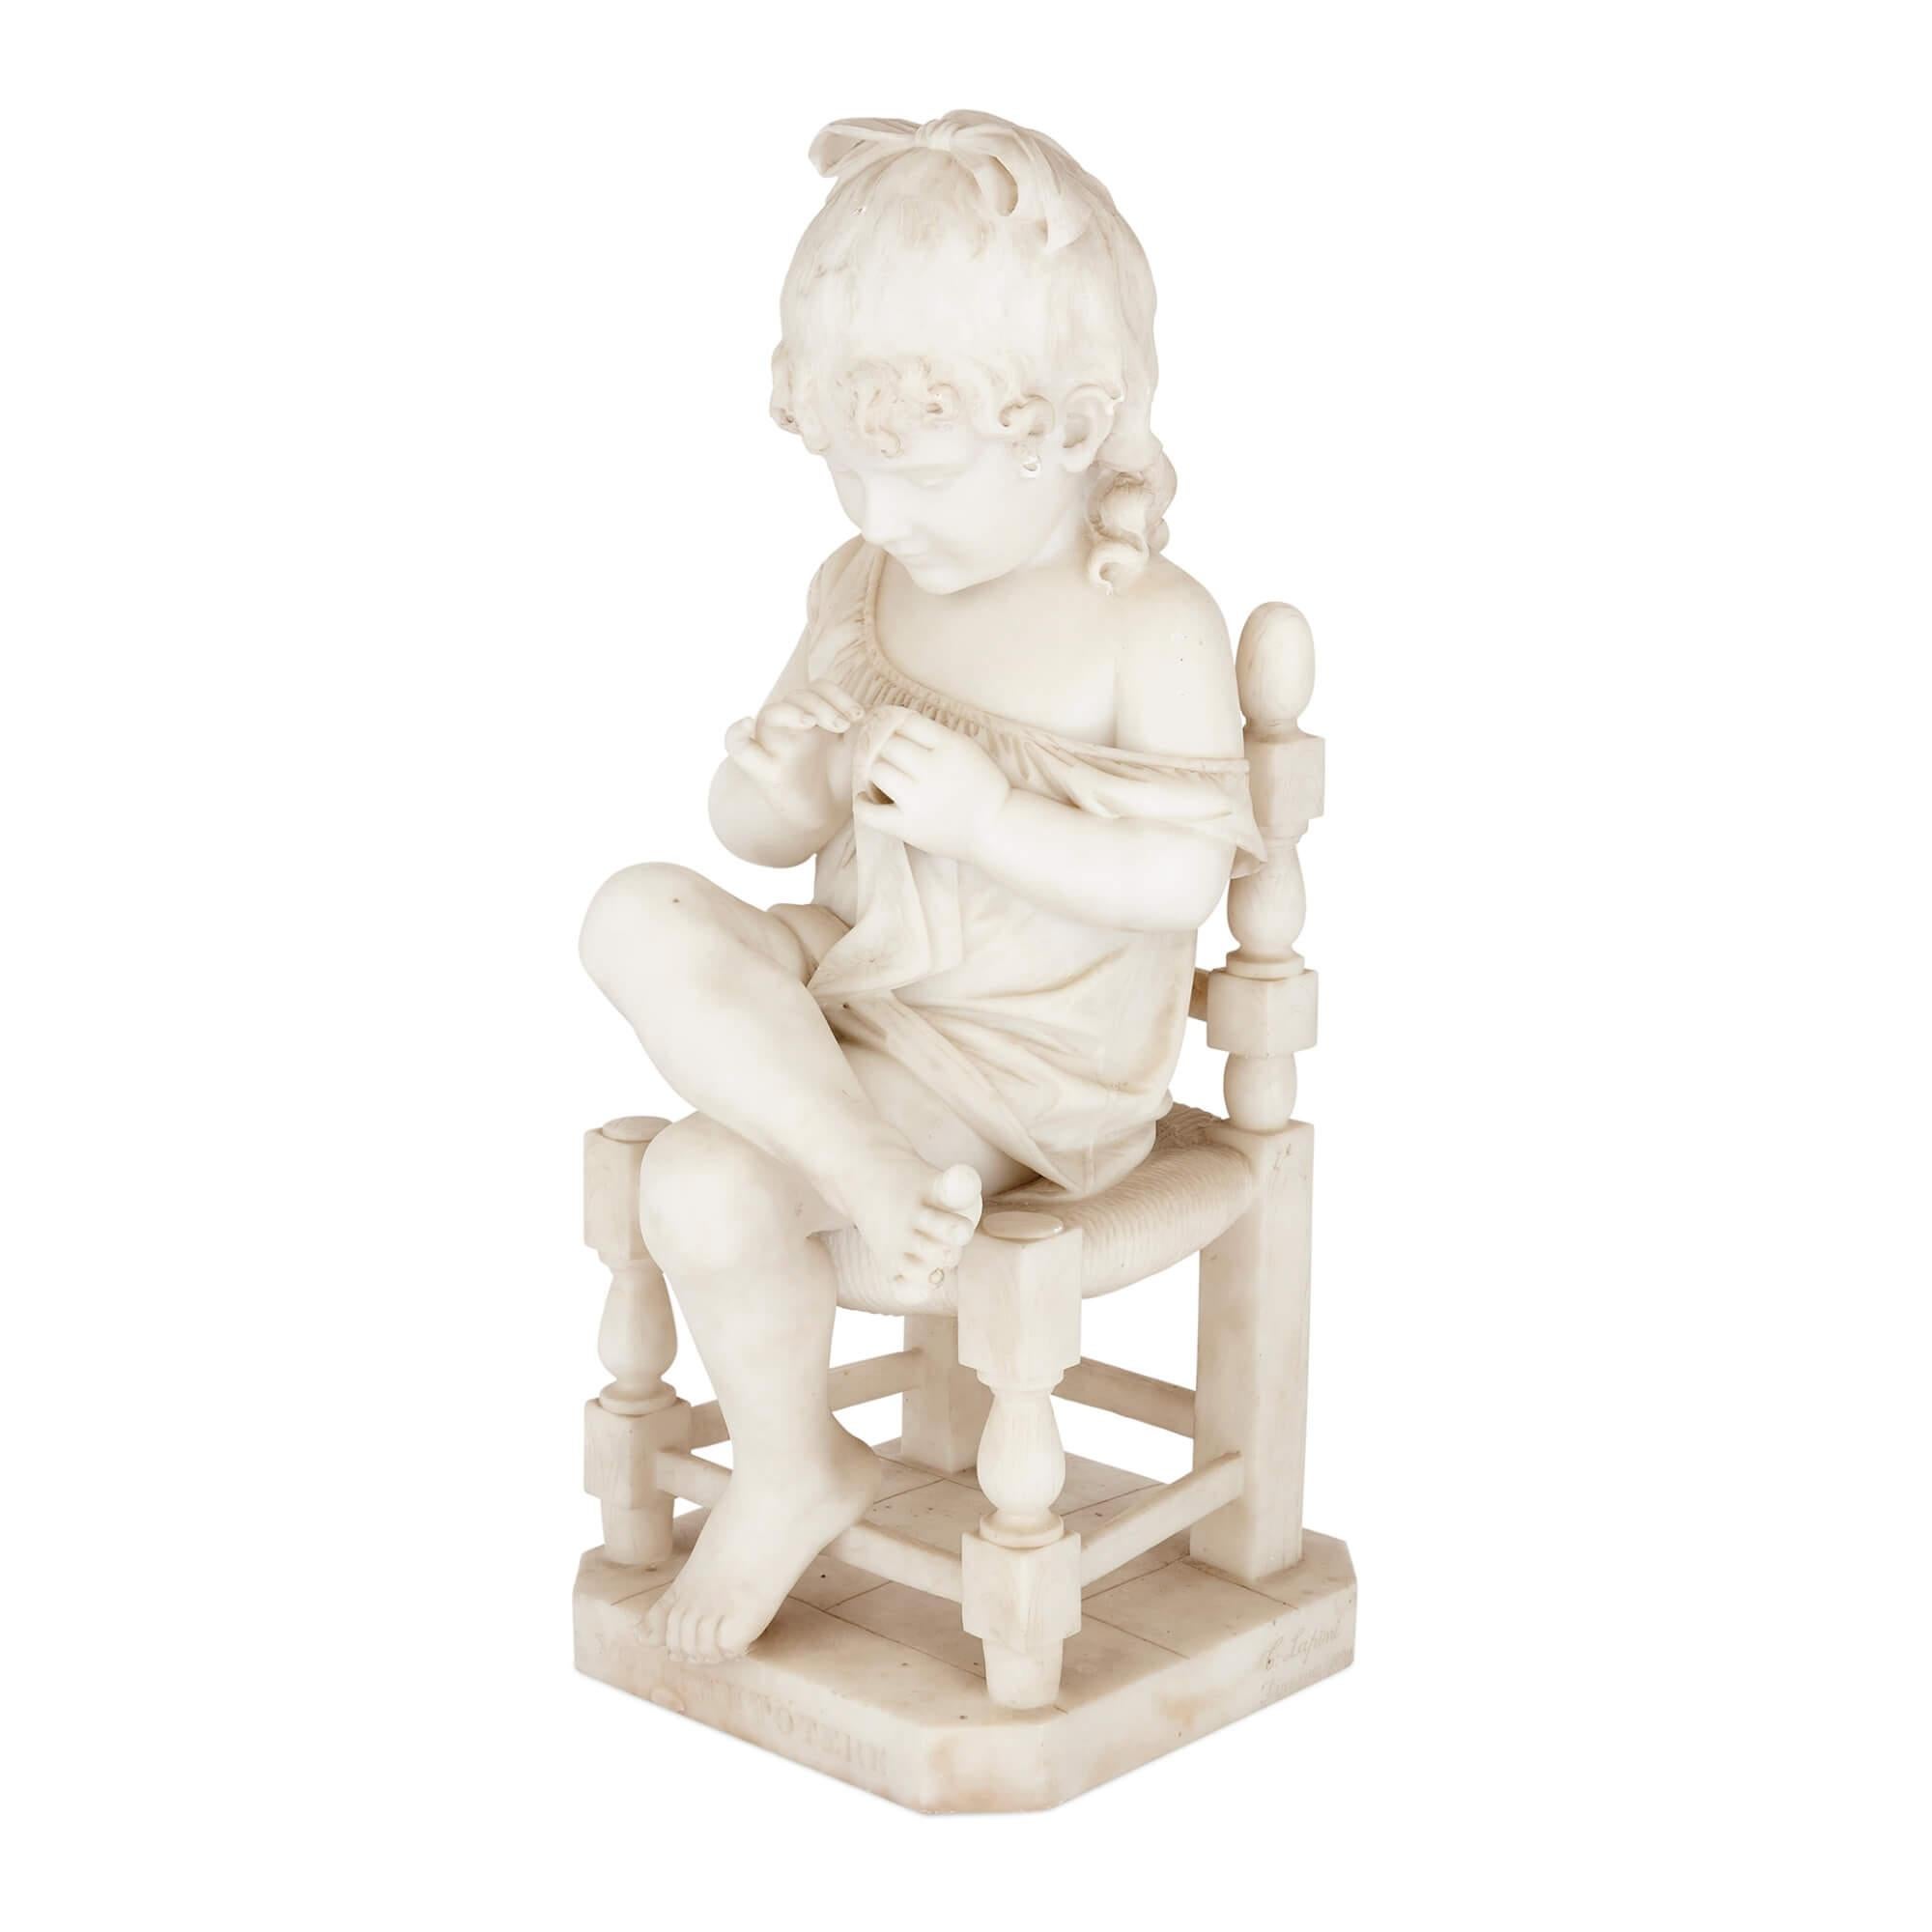 Très rare paire de sculptures en marbre d'enfants assis par Cesar Lapini
Italie, Fin du 19e siècle
Garçon : hauteur 71cm, largeur 32cm, profondeur 41cm
Fille : hauteur 71cm, largeur 33cm, profondeur 35cm

Ces merveilleuses sculptures ont été